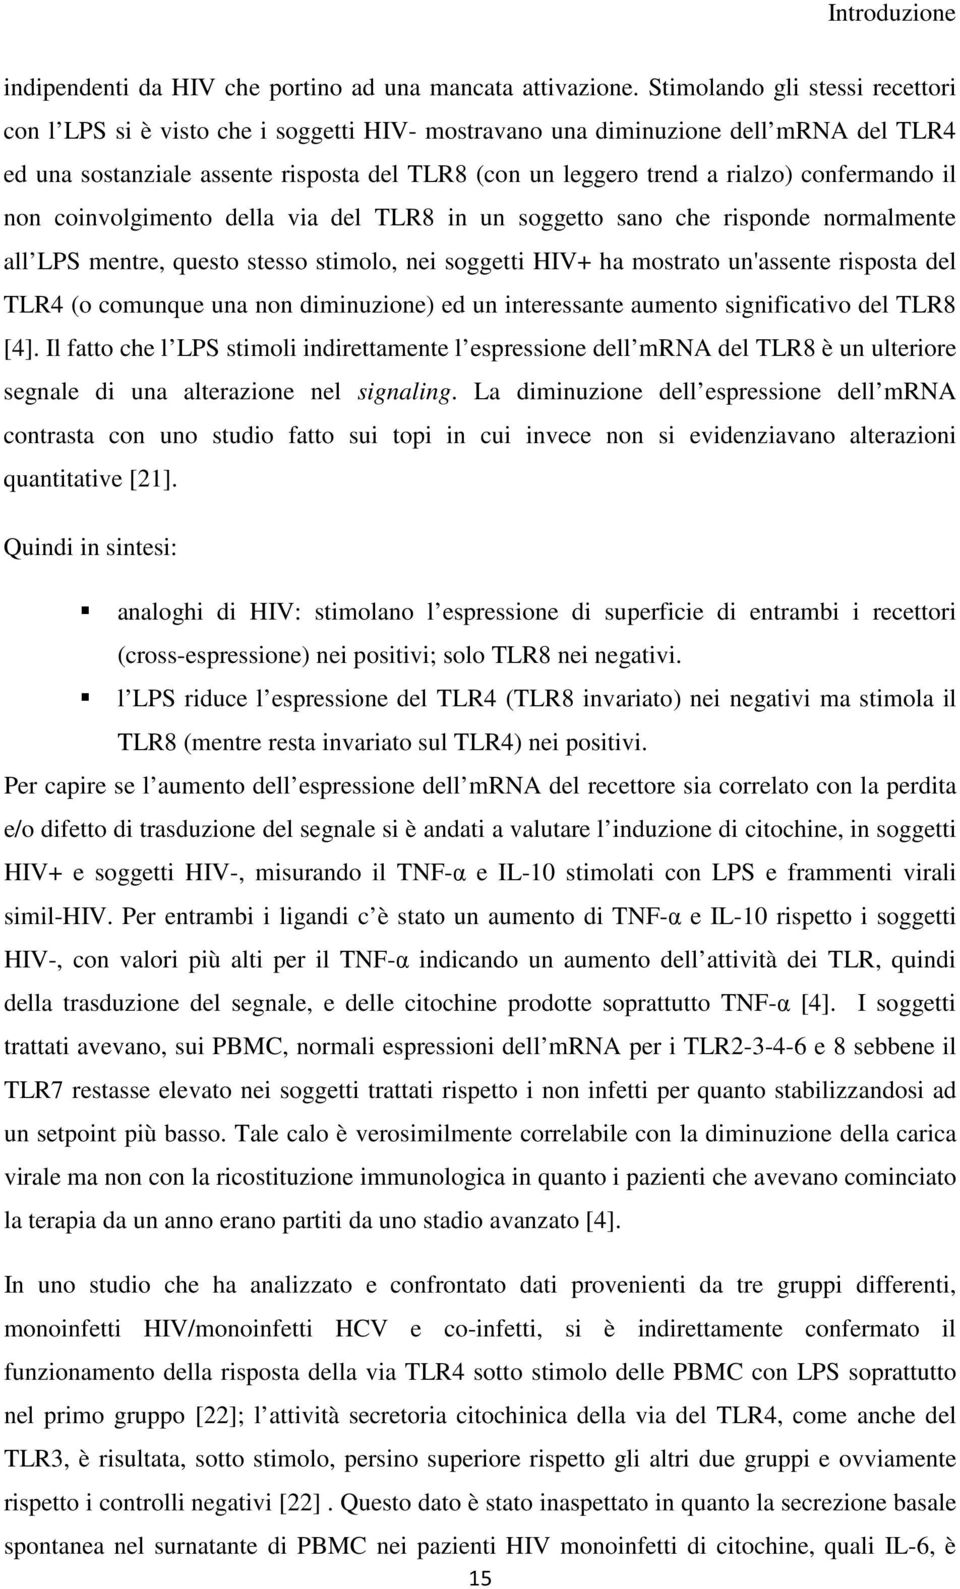 confermando il non coinvolgimento della via del TLR8 in un soggetto sano che risponde normalmente all LPS mentre, questo stesso stimolo, nei soggetti HIV+ ha mostrato un'assente risposta del TLR4 (o